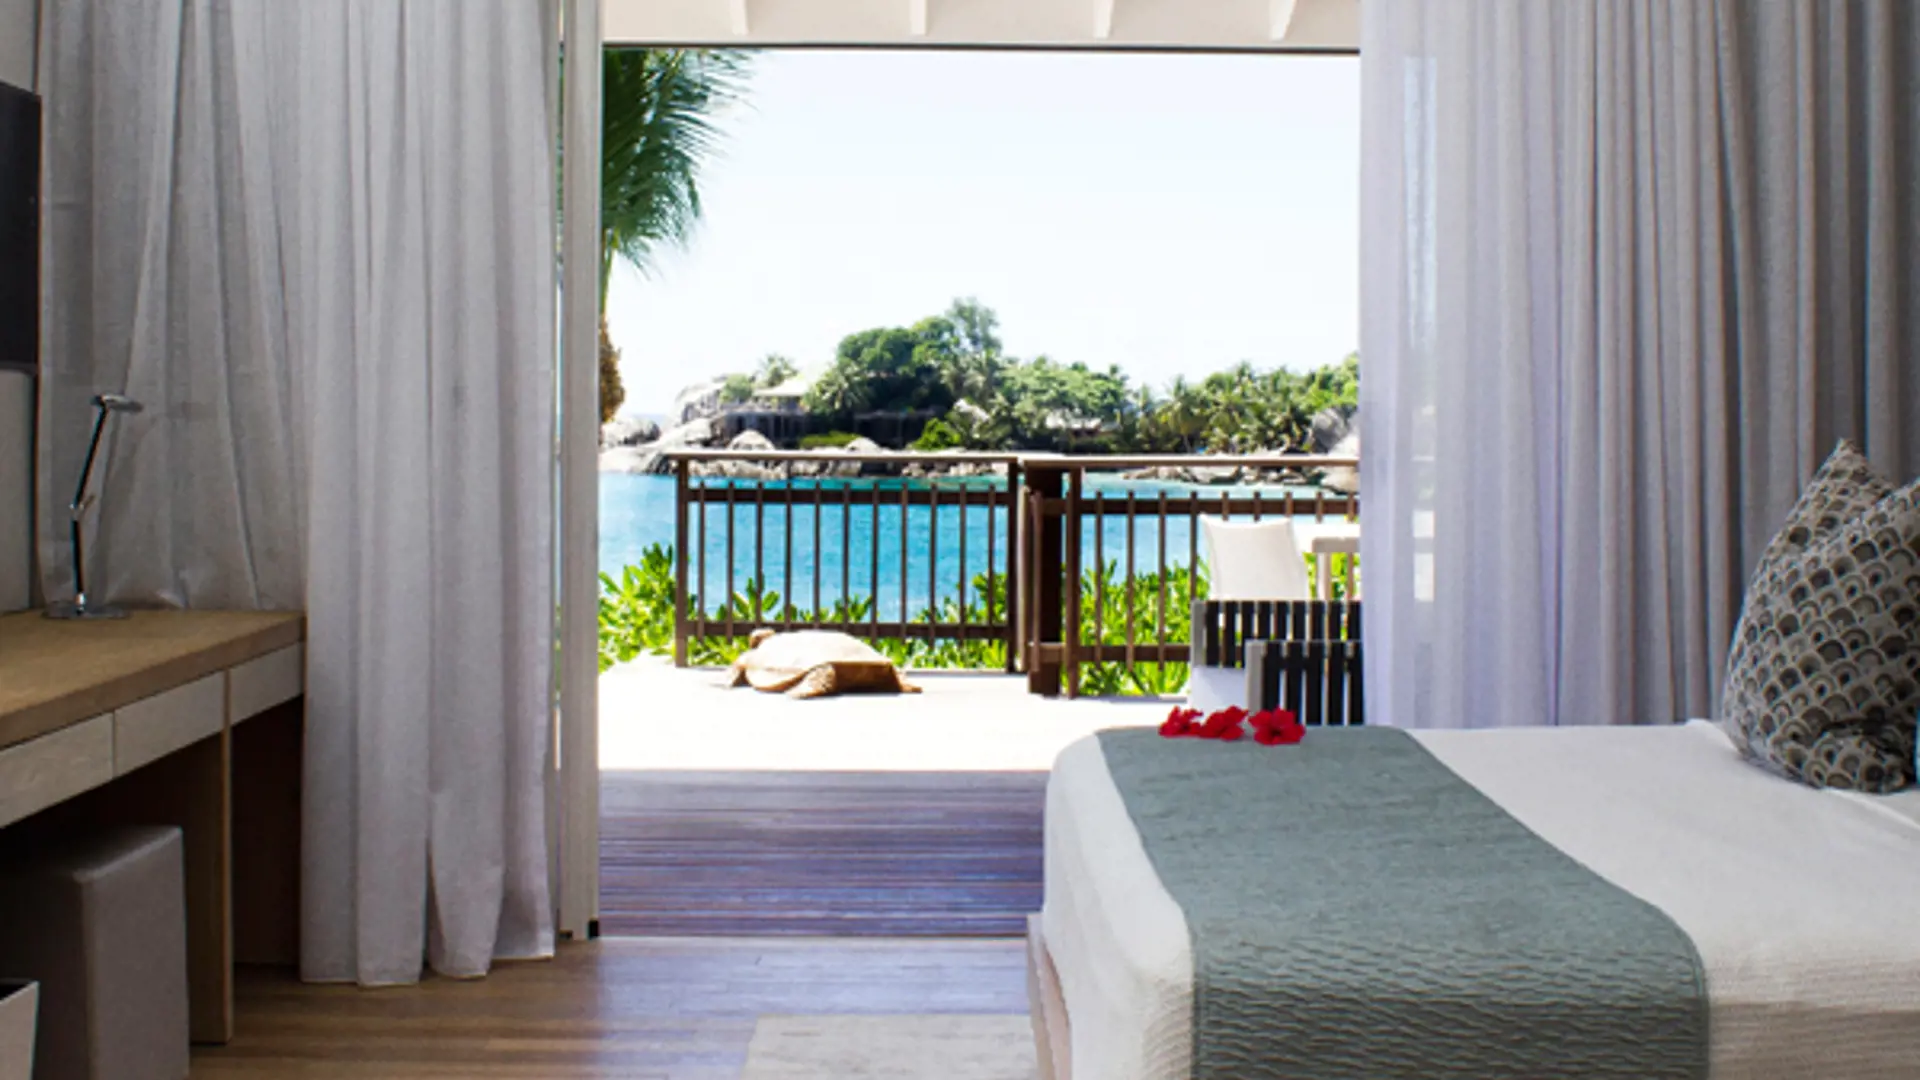 LUKSUSBADEFERIE - Nyd en badeferie i skønne omgivelser på Mahé, Seychellerne. I bor i flot bungalow med havudsigt.